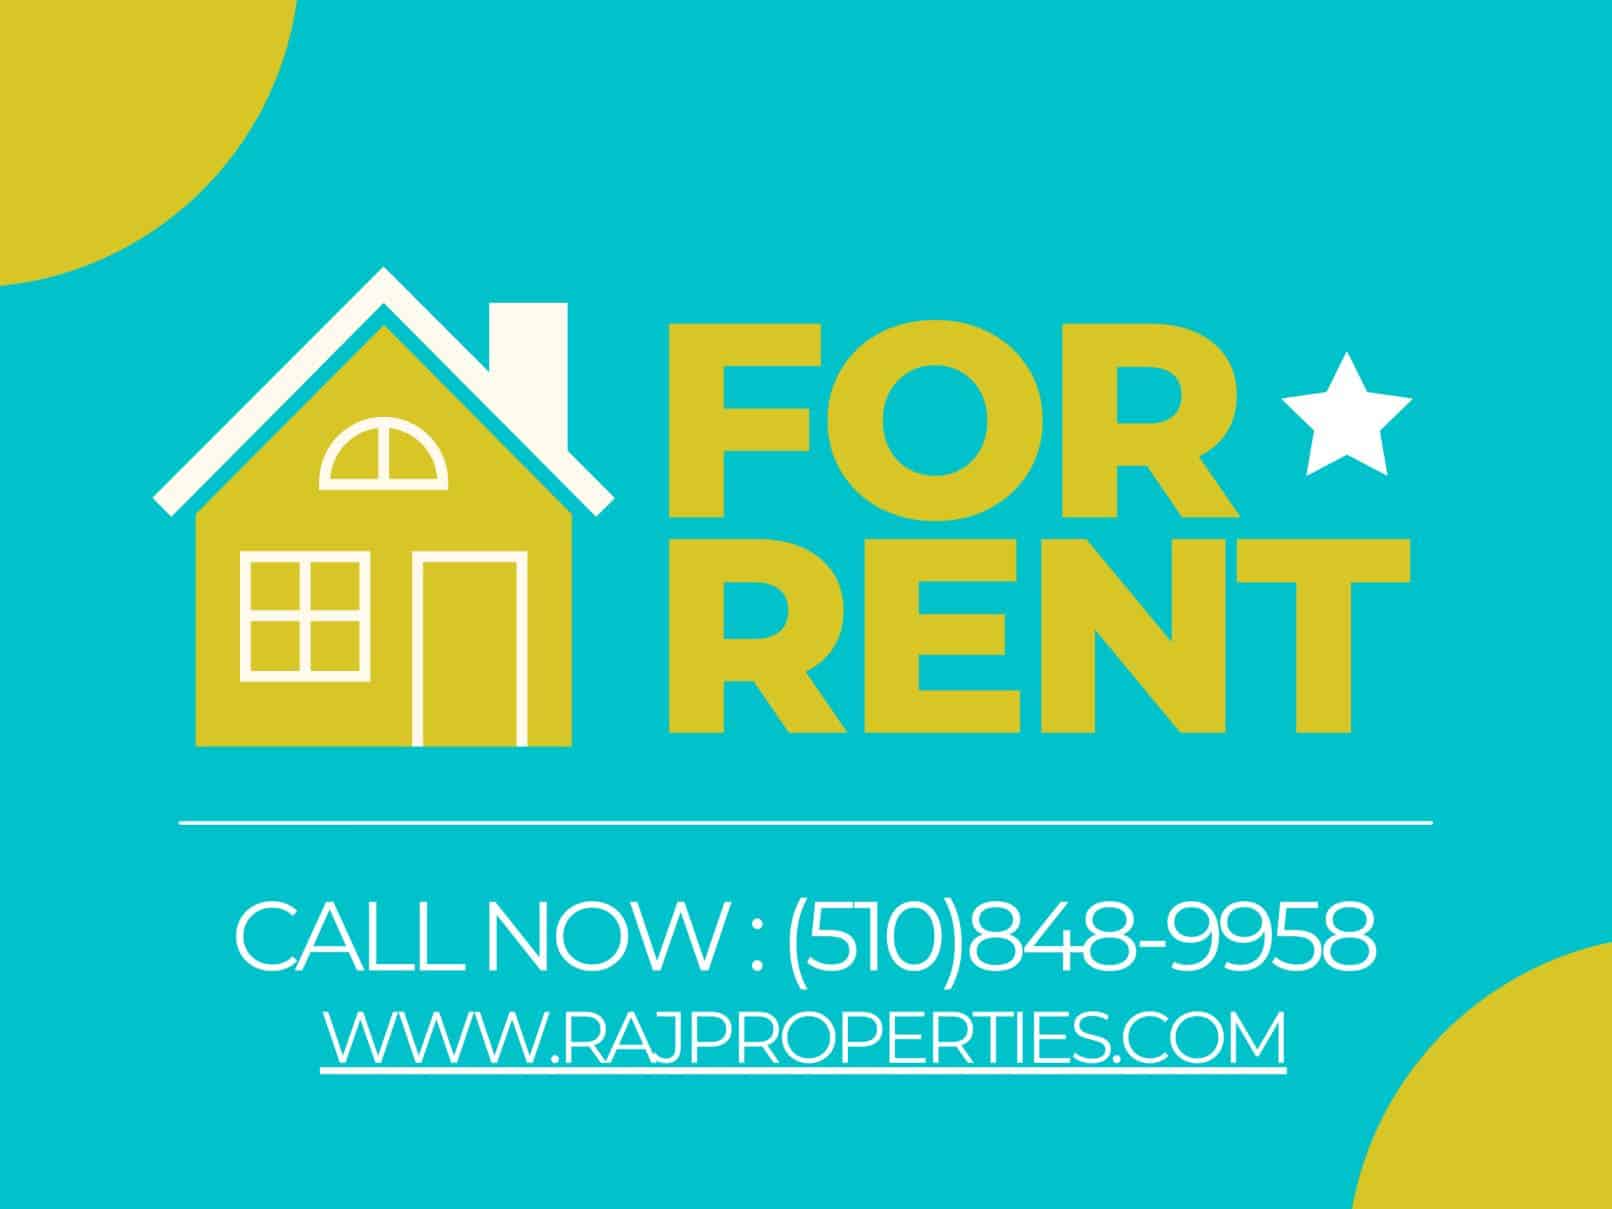 2 Bedroom Apartments For Rent San Francisco - Raj Properties-78193b6a